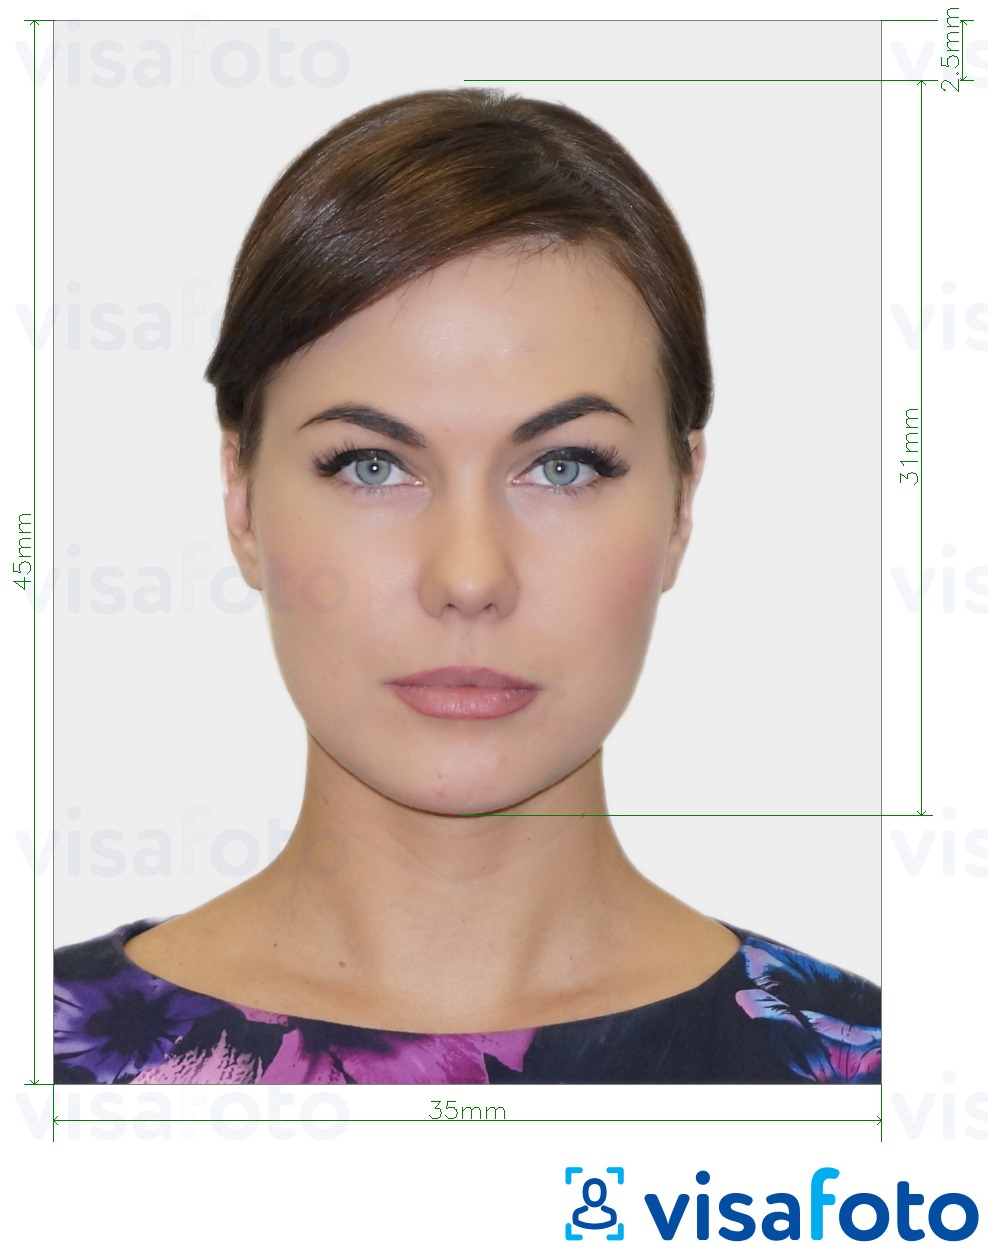 Contoh dari foto untuk Visa Belgia 35x45 mm (3,5x4,5 cm) dengan ukuran spesifikasi yang tepat